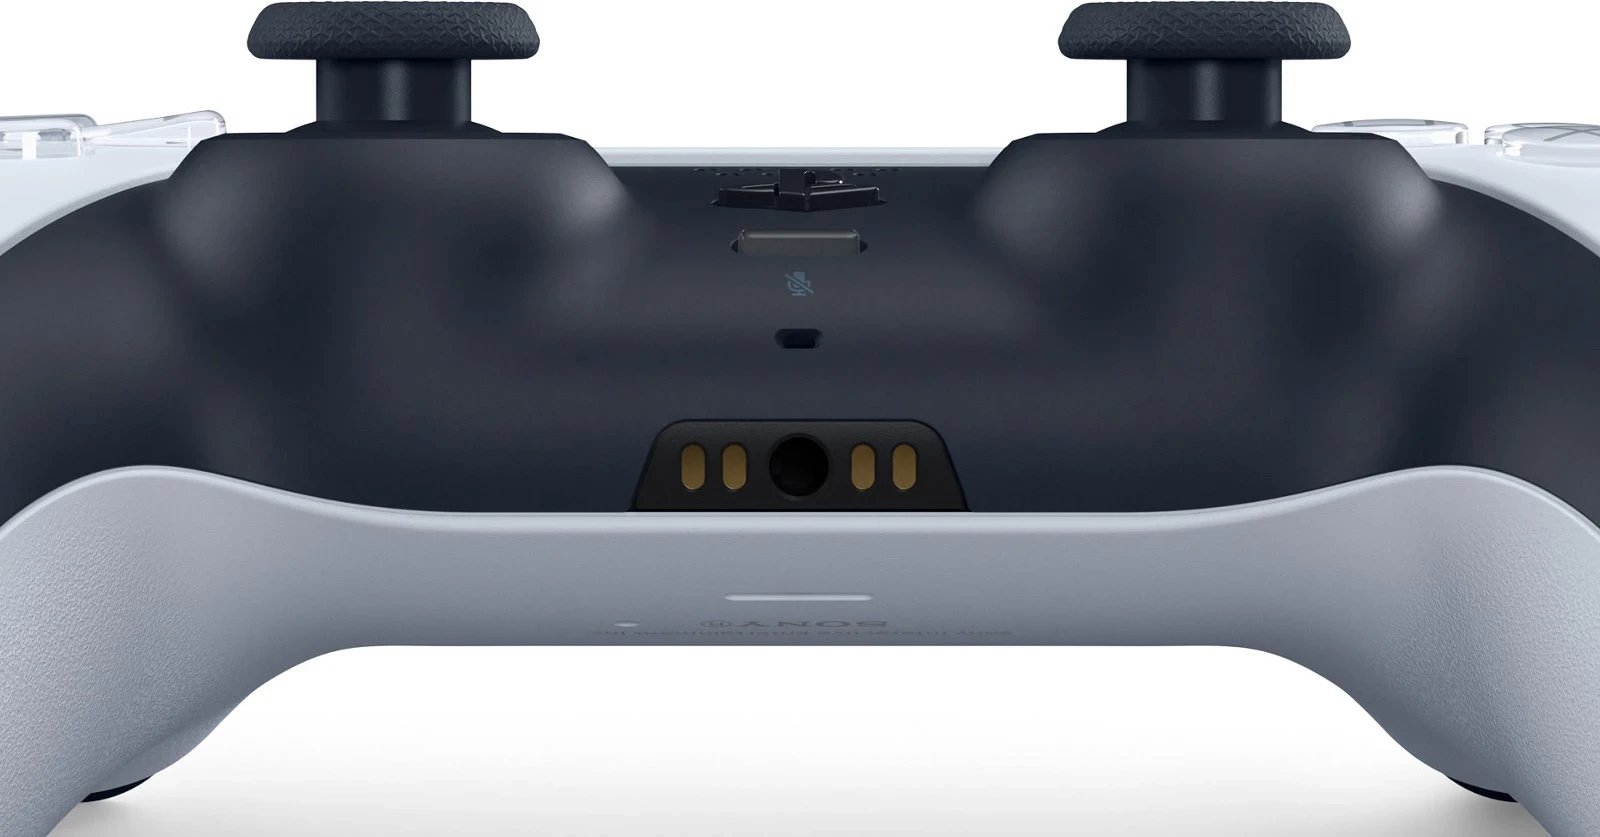 Kontrollues lojërash Sony DualSense për PlayStation 5, Bluetooth/USB, i Zi dhe i Bardhë